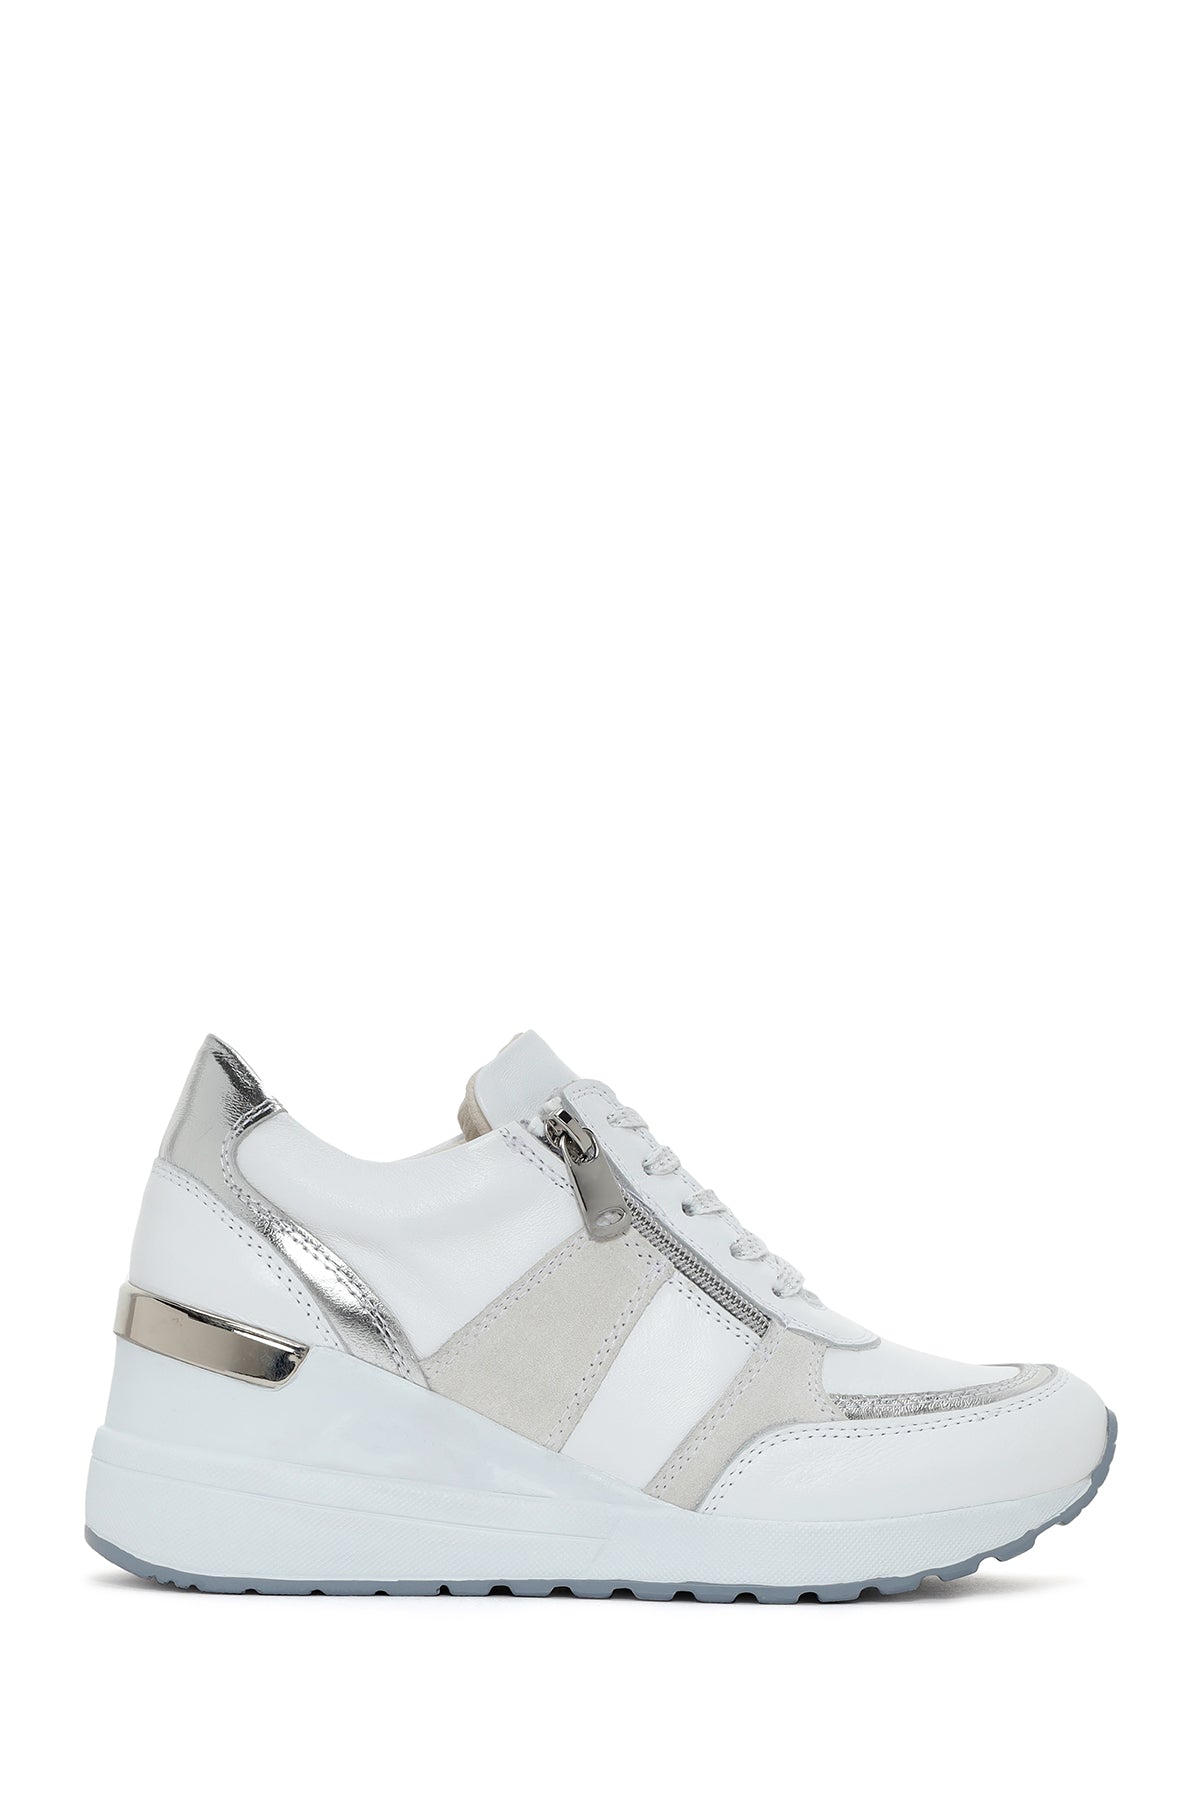 Kadın Beyaz Dolgu Topuklu Yandan Fermuarlı Süet Deri Spor Ayakkabı 24SFD370414 | Derimod